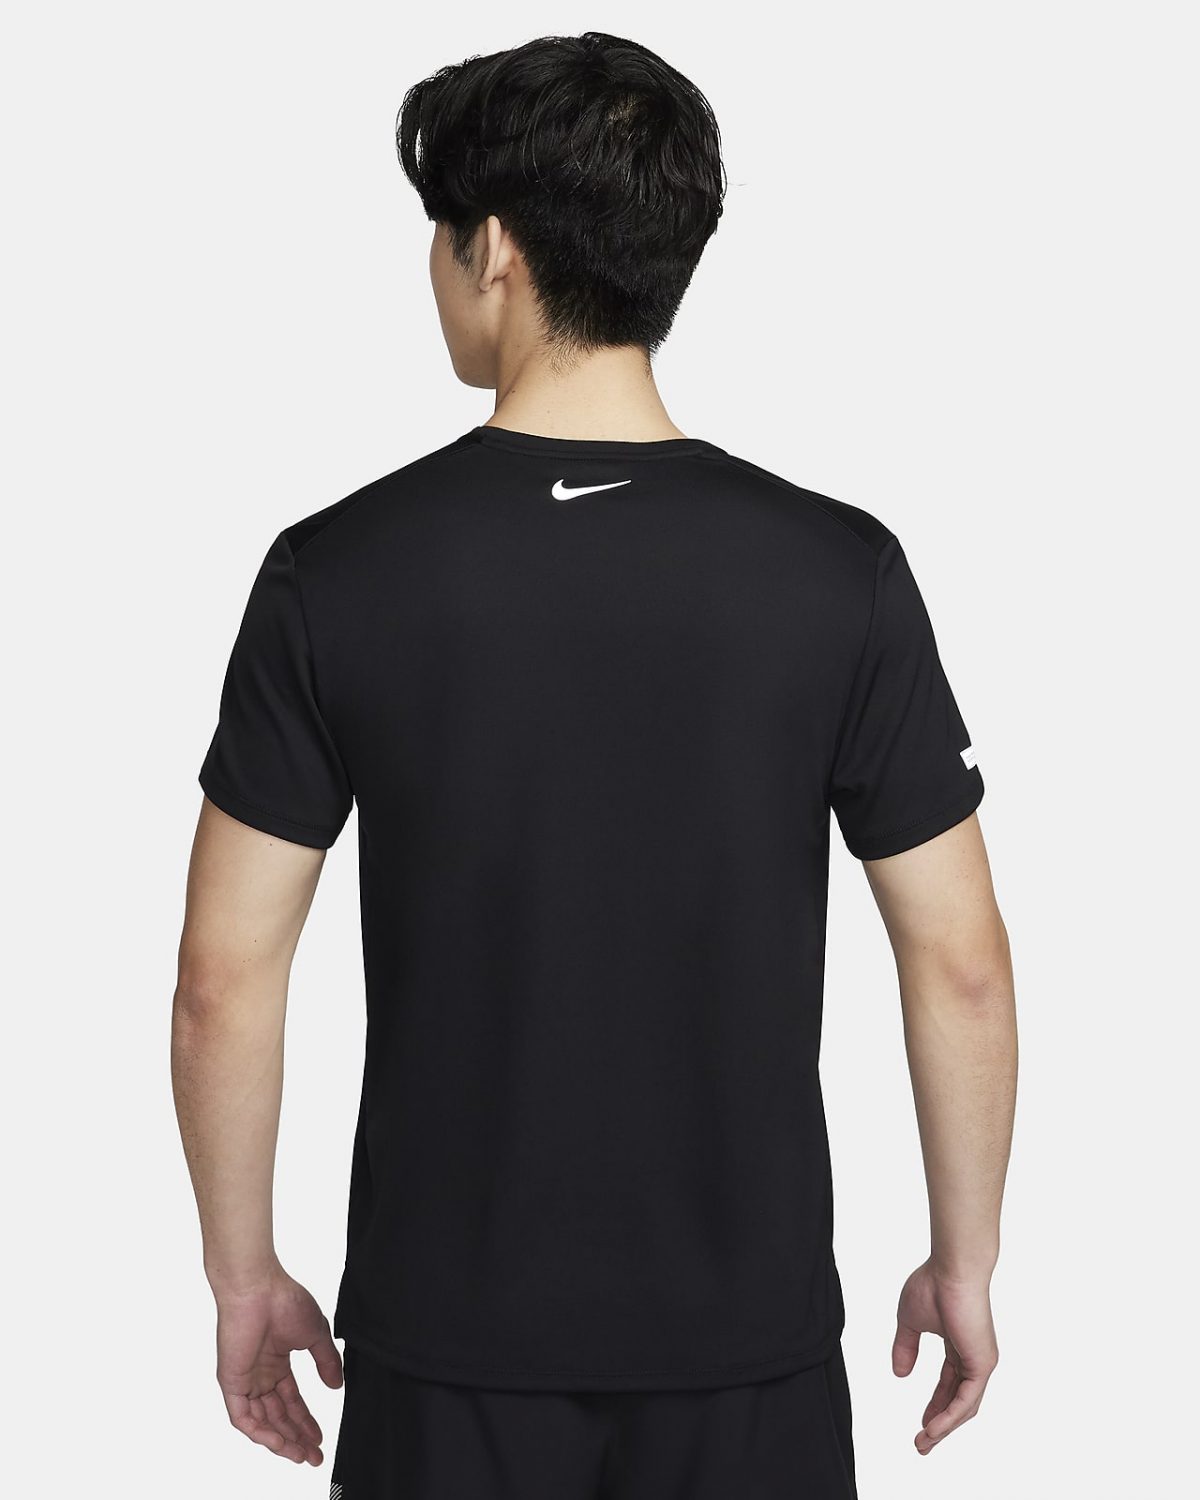 Мужской топ Nike Miler Flash черный фотография